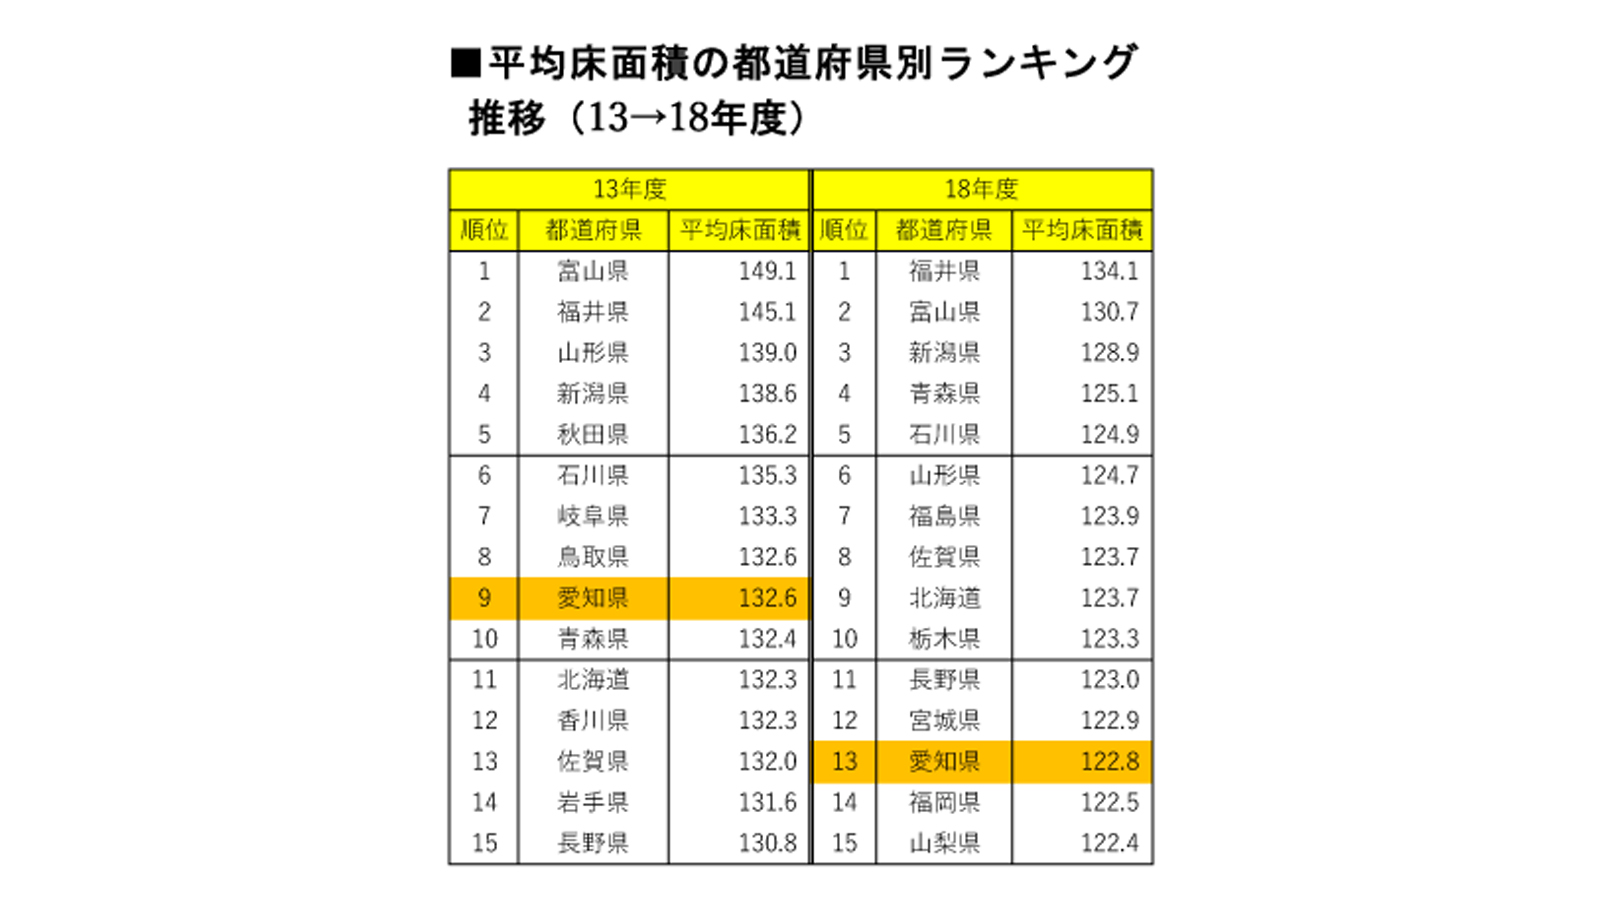 平均床面積の都道府県別ランキング推移（13→18年度）